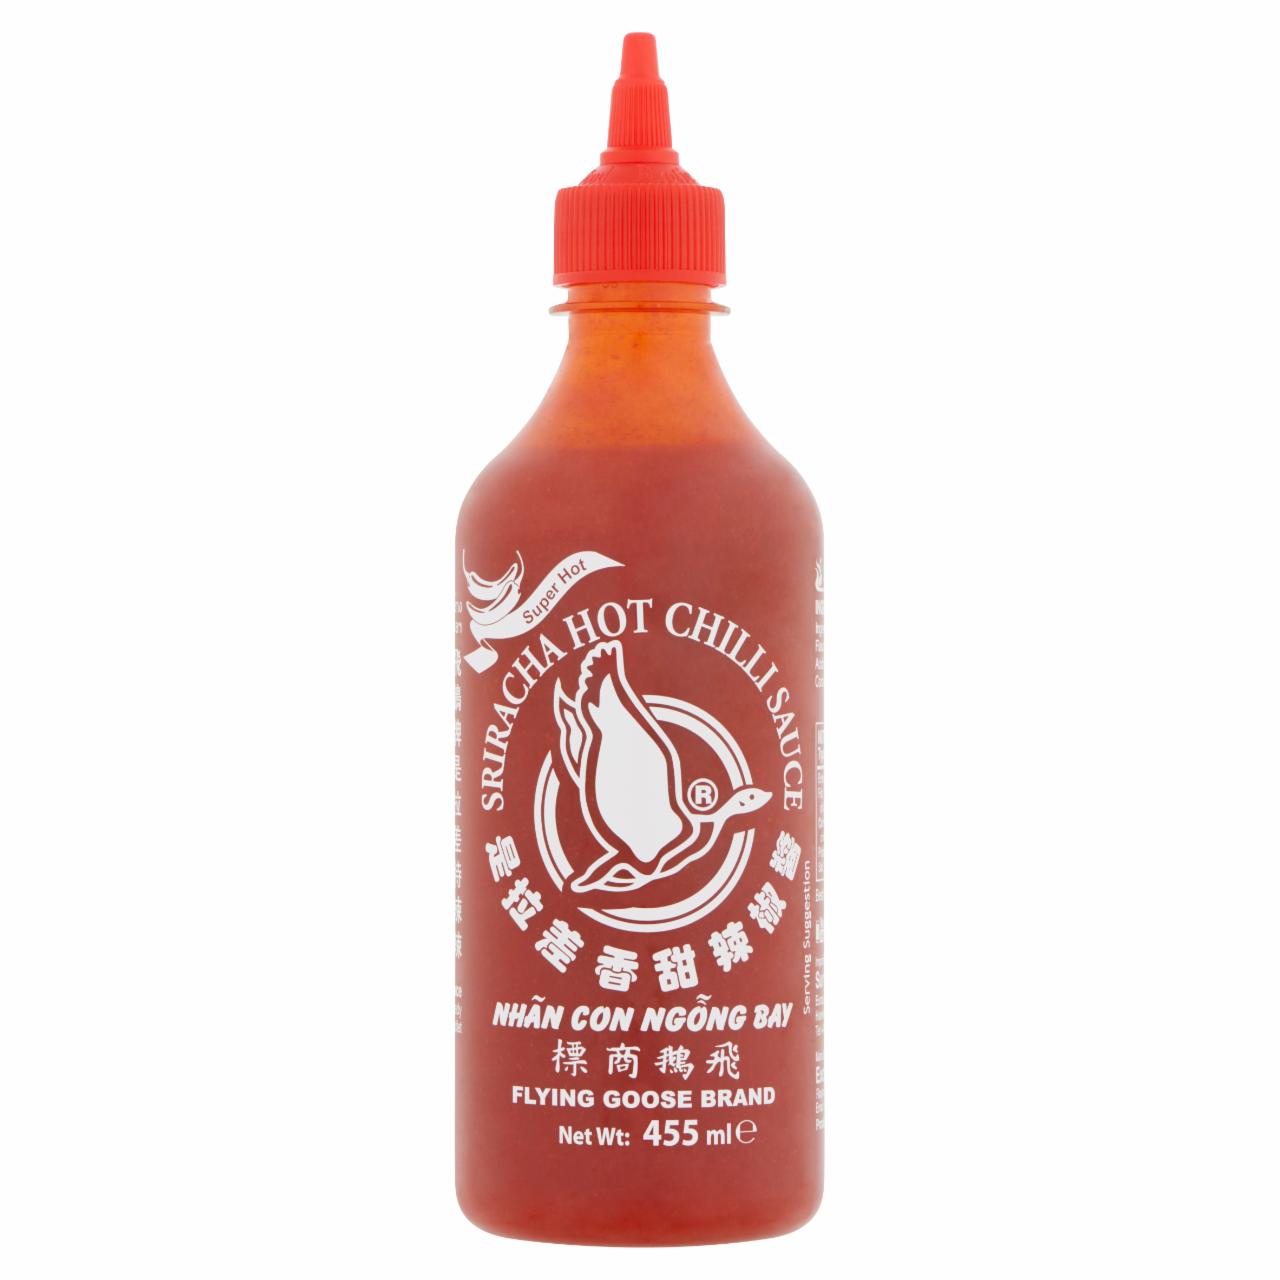 Képek - Flying Goose Brand Sriracha szuper csípős chili szósz 455 ml